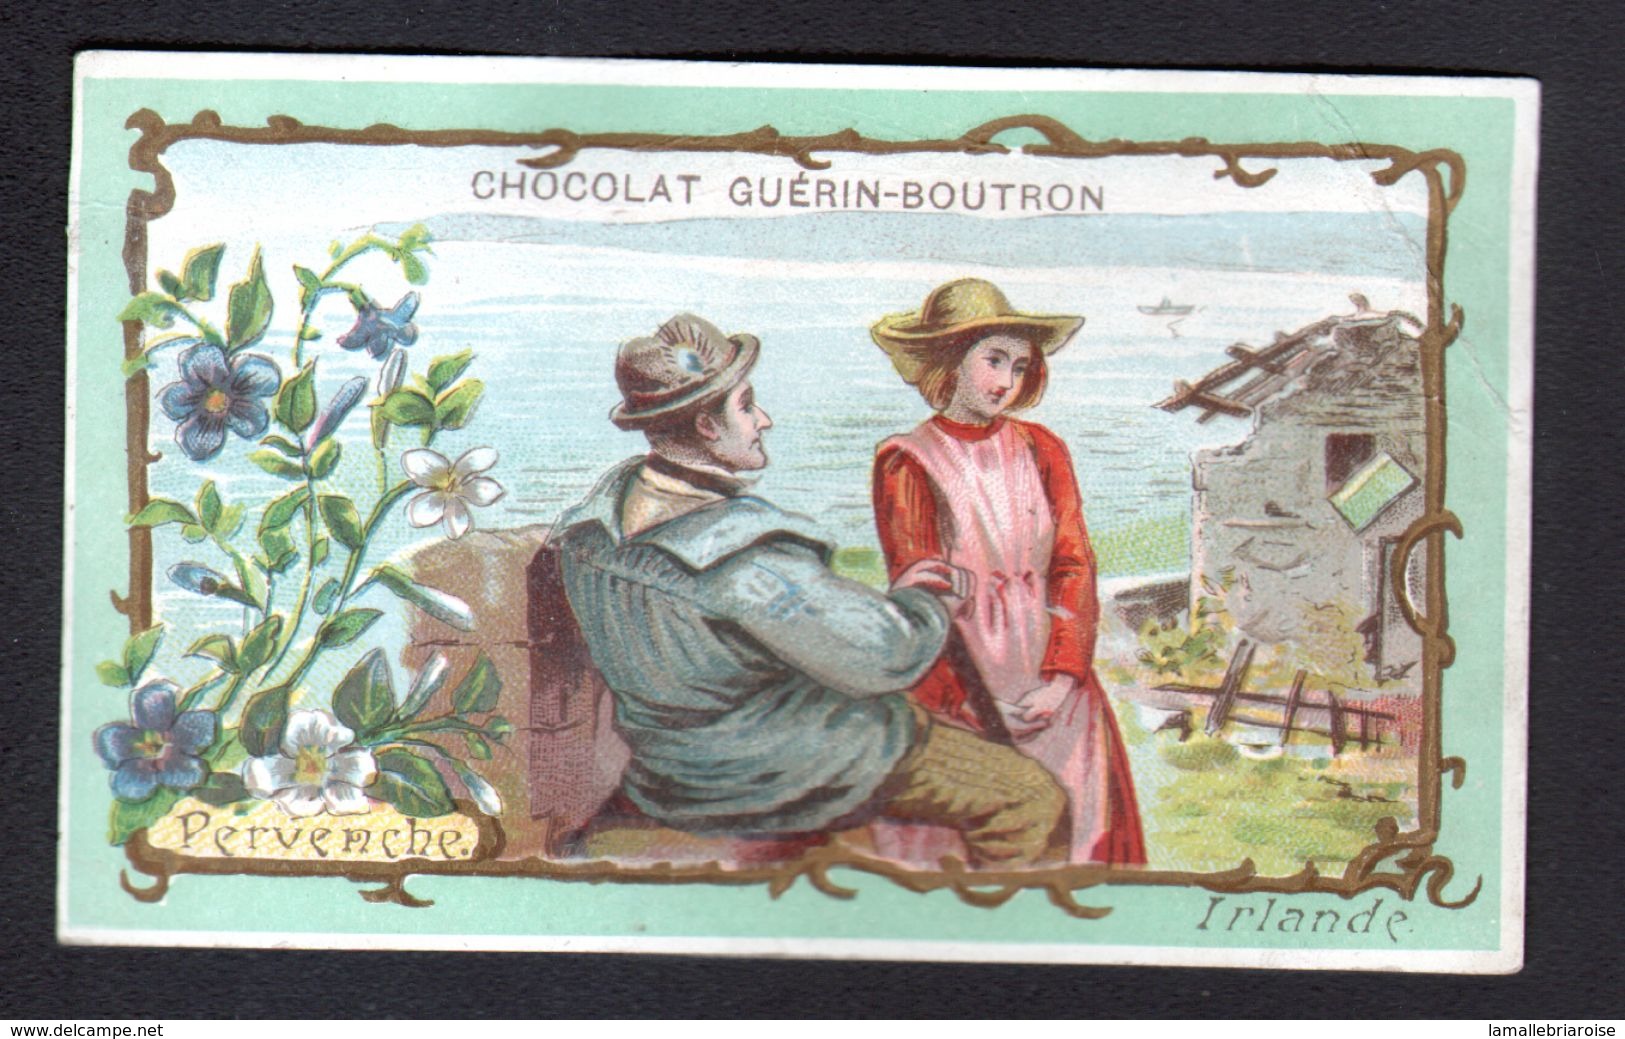 Chocolat Guerin Boutron, ..., IRLANDE, PERVENCHE - Guerin Boutron